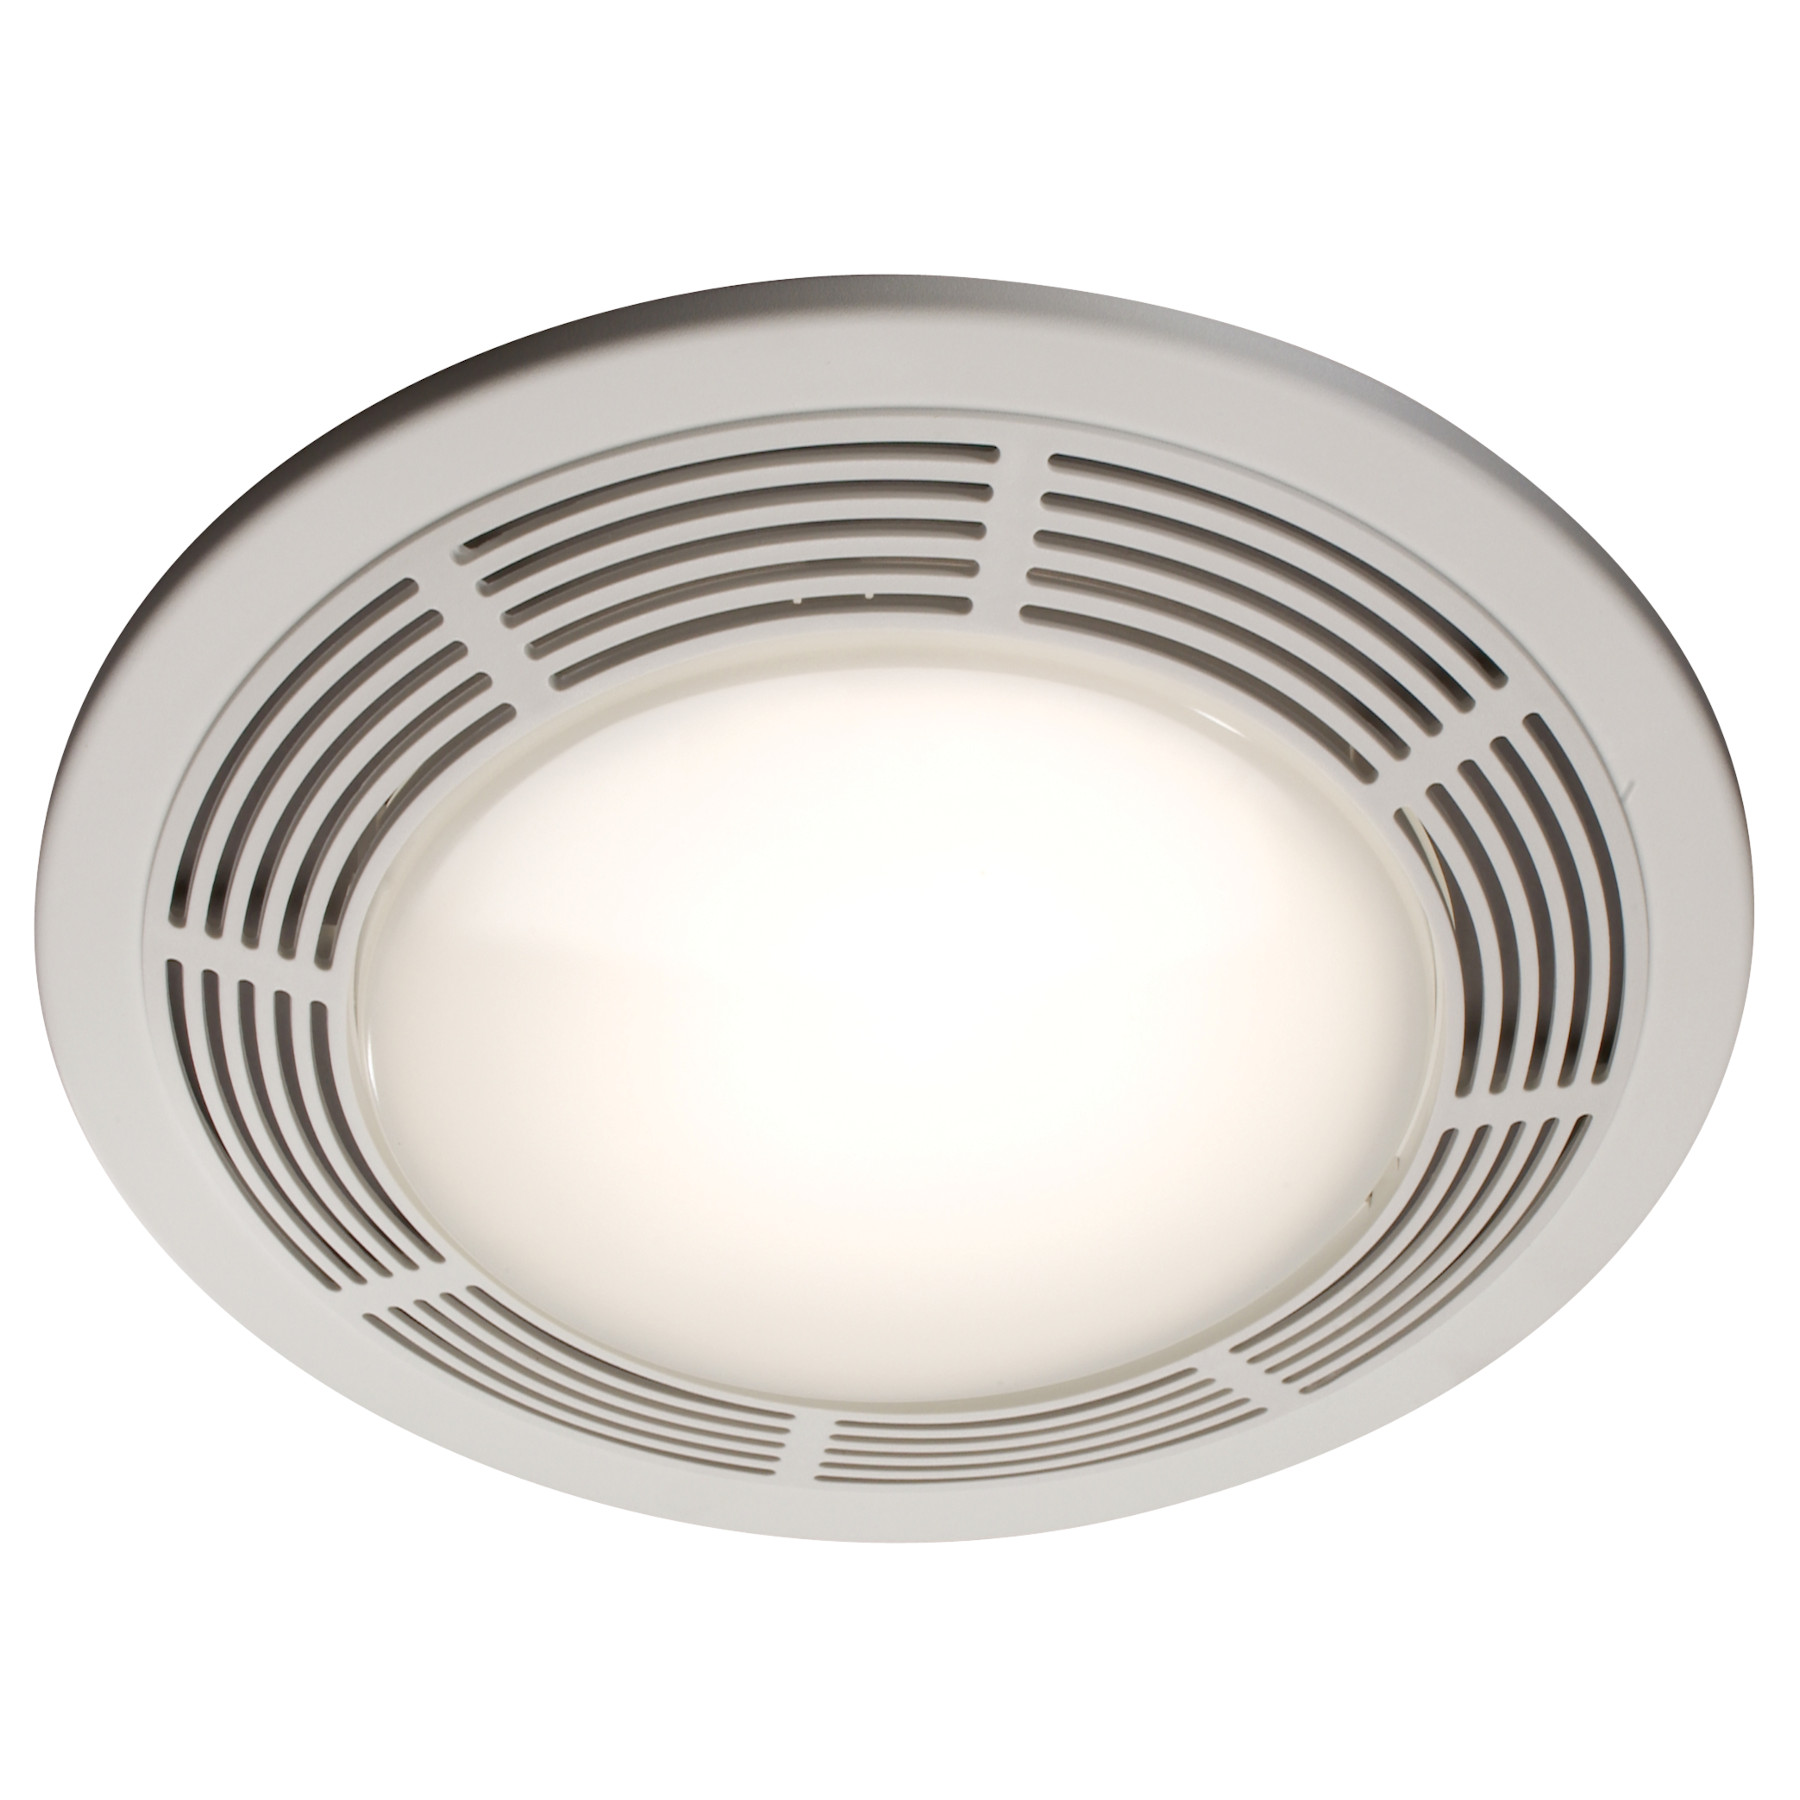 750 Broan Ventilation Fan W Light And, Bathroom Exhaust Fan And Light